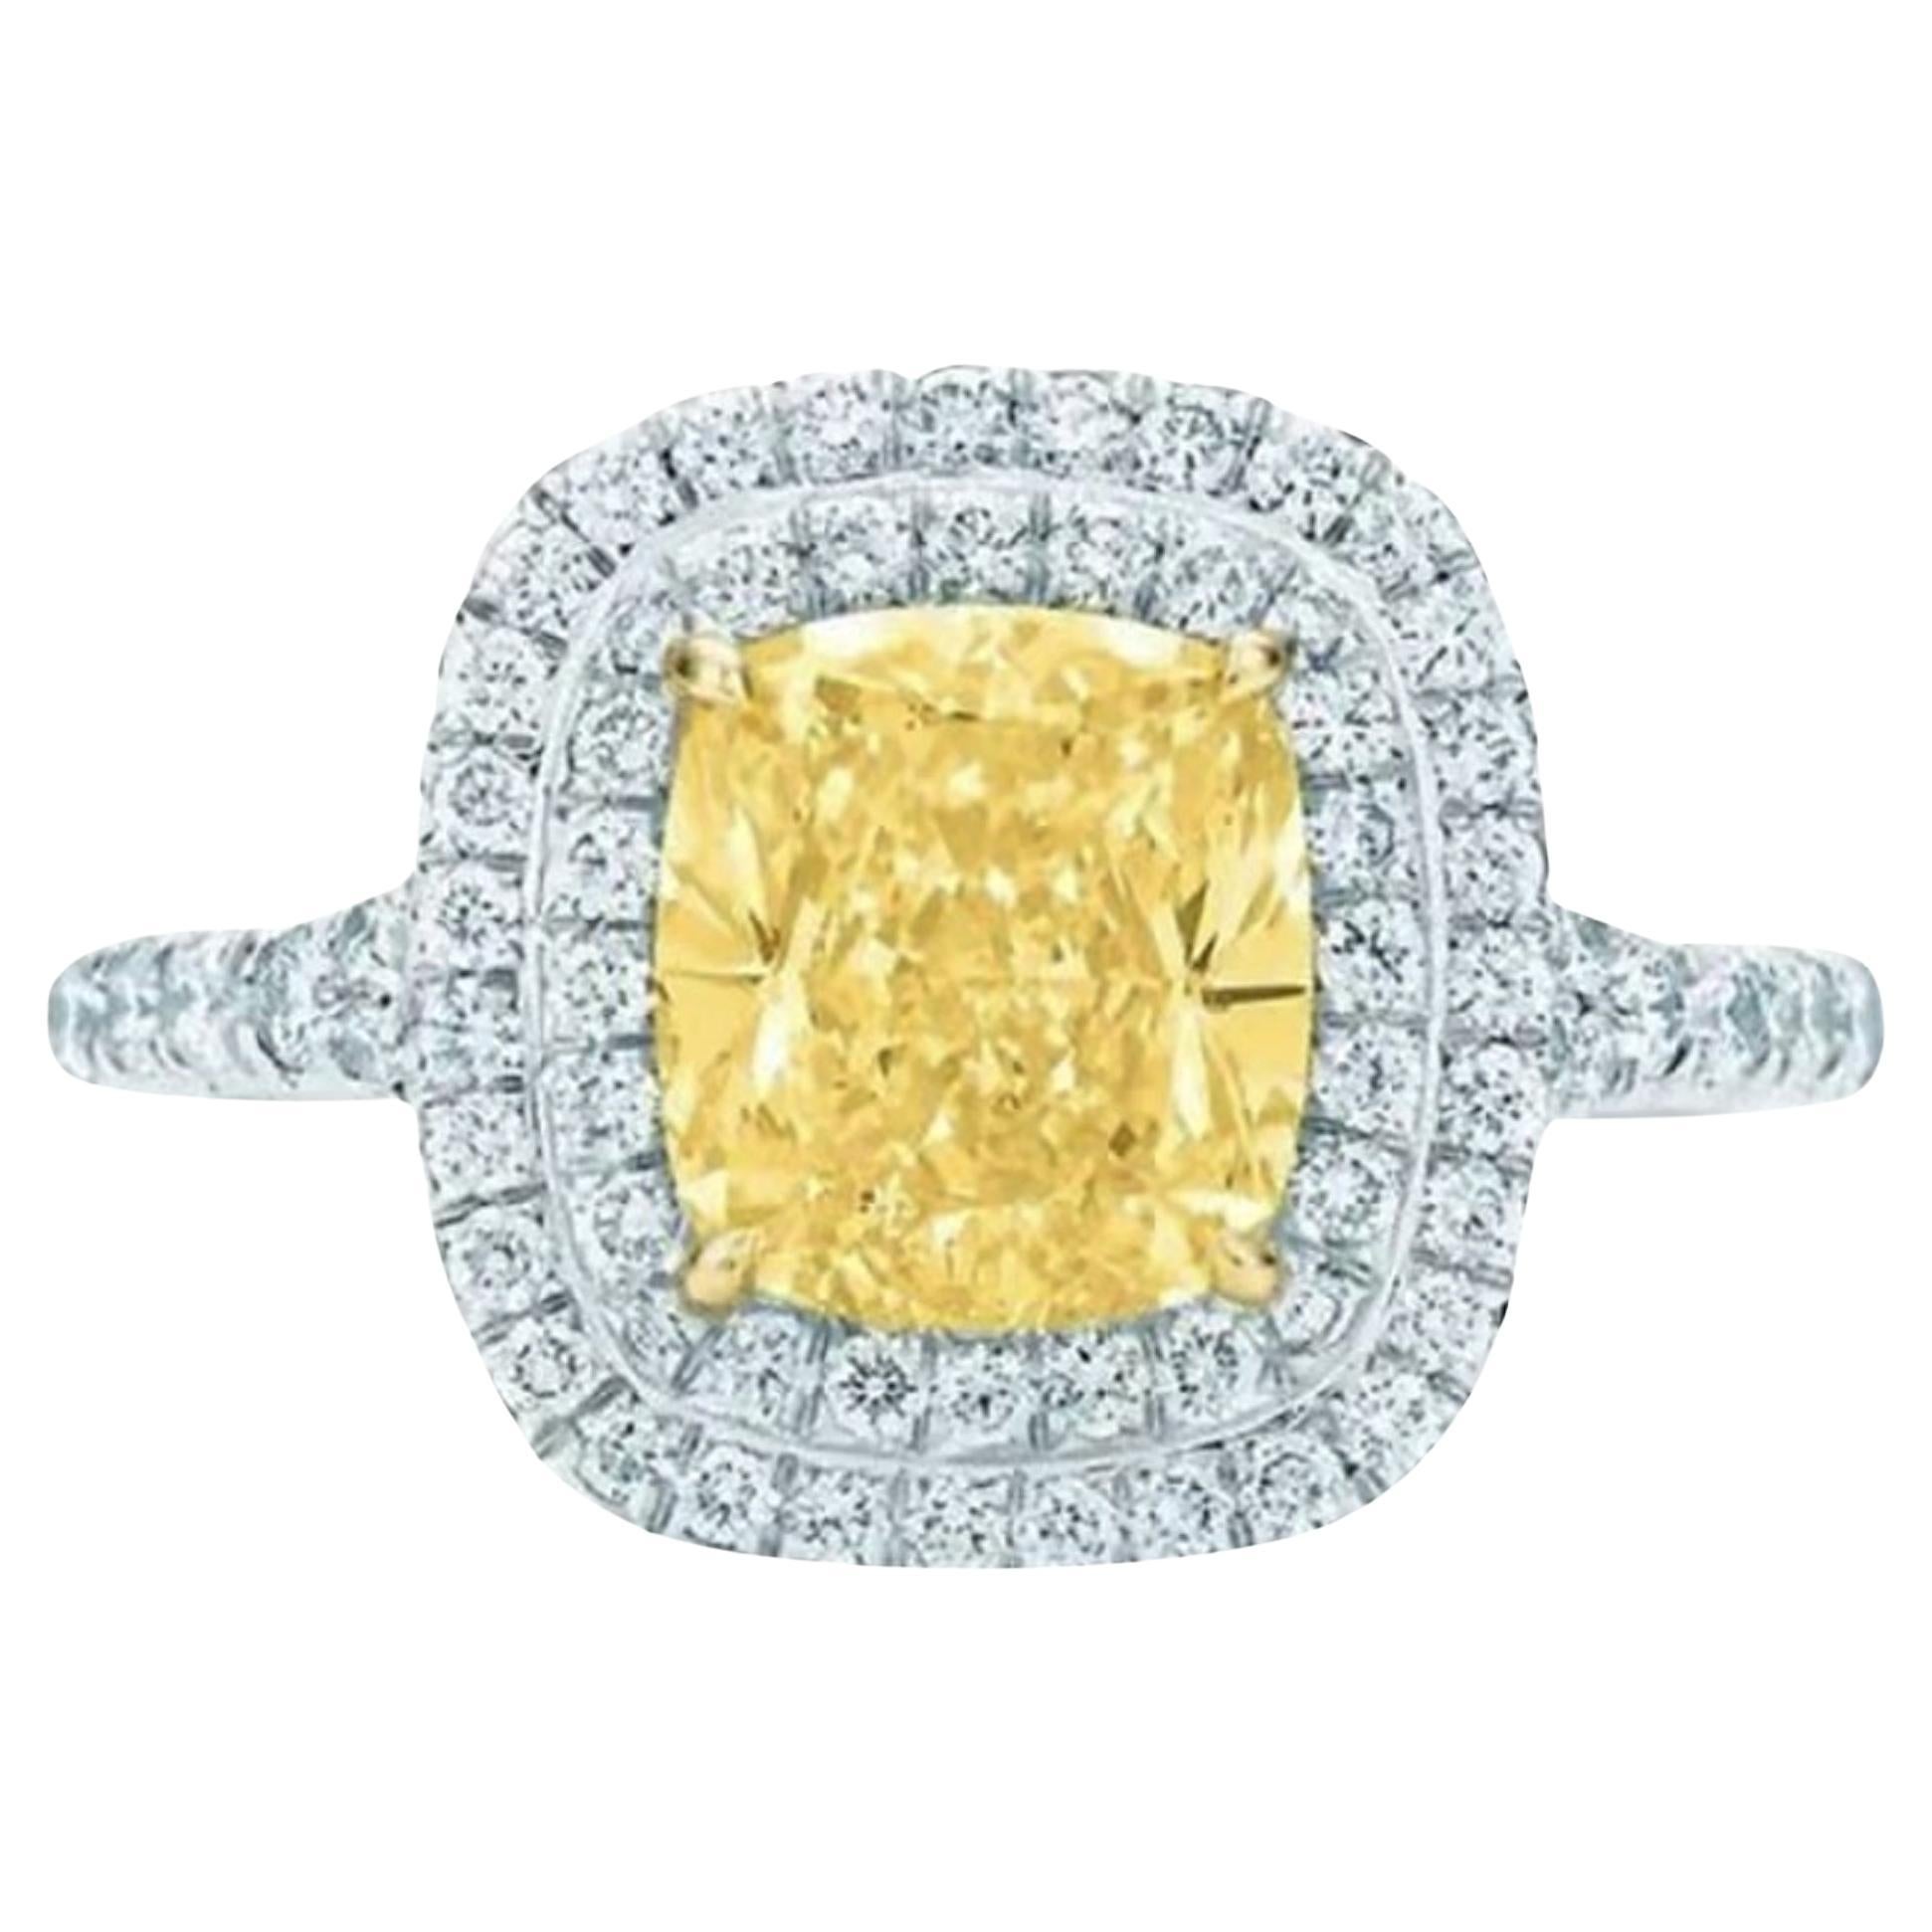 Тиффани желтый. Tiffany Yellow Diamond Ring. Кольцо с желтым бриллиантом Тиффани. Tiffany Yellow Diamond. Тиффани платинум Даймонд.